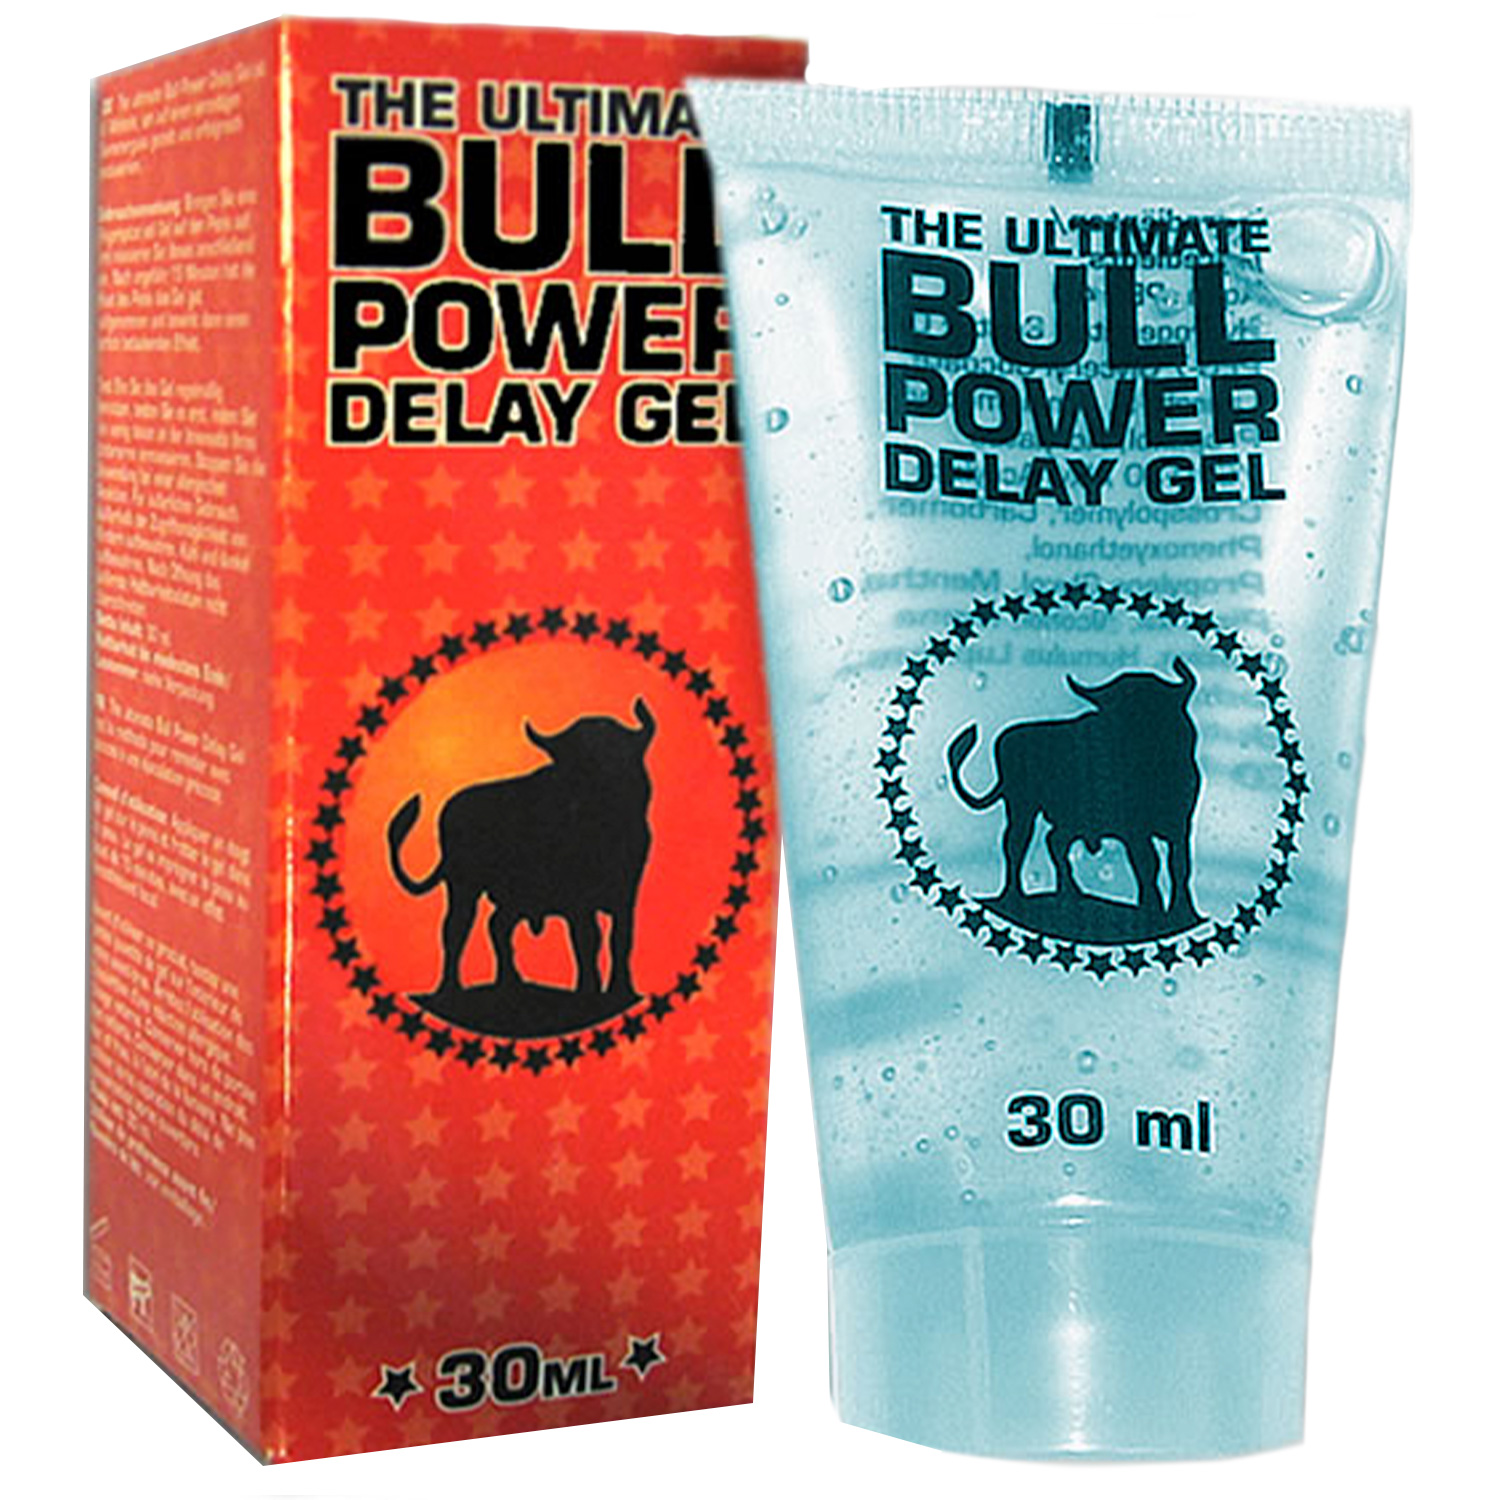 Bull Power Delay Gel 30 ml - Clear